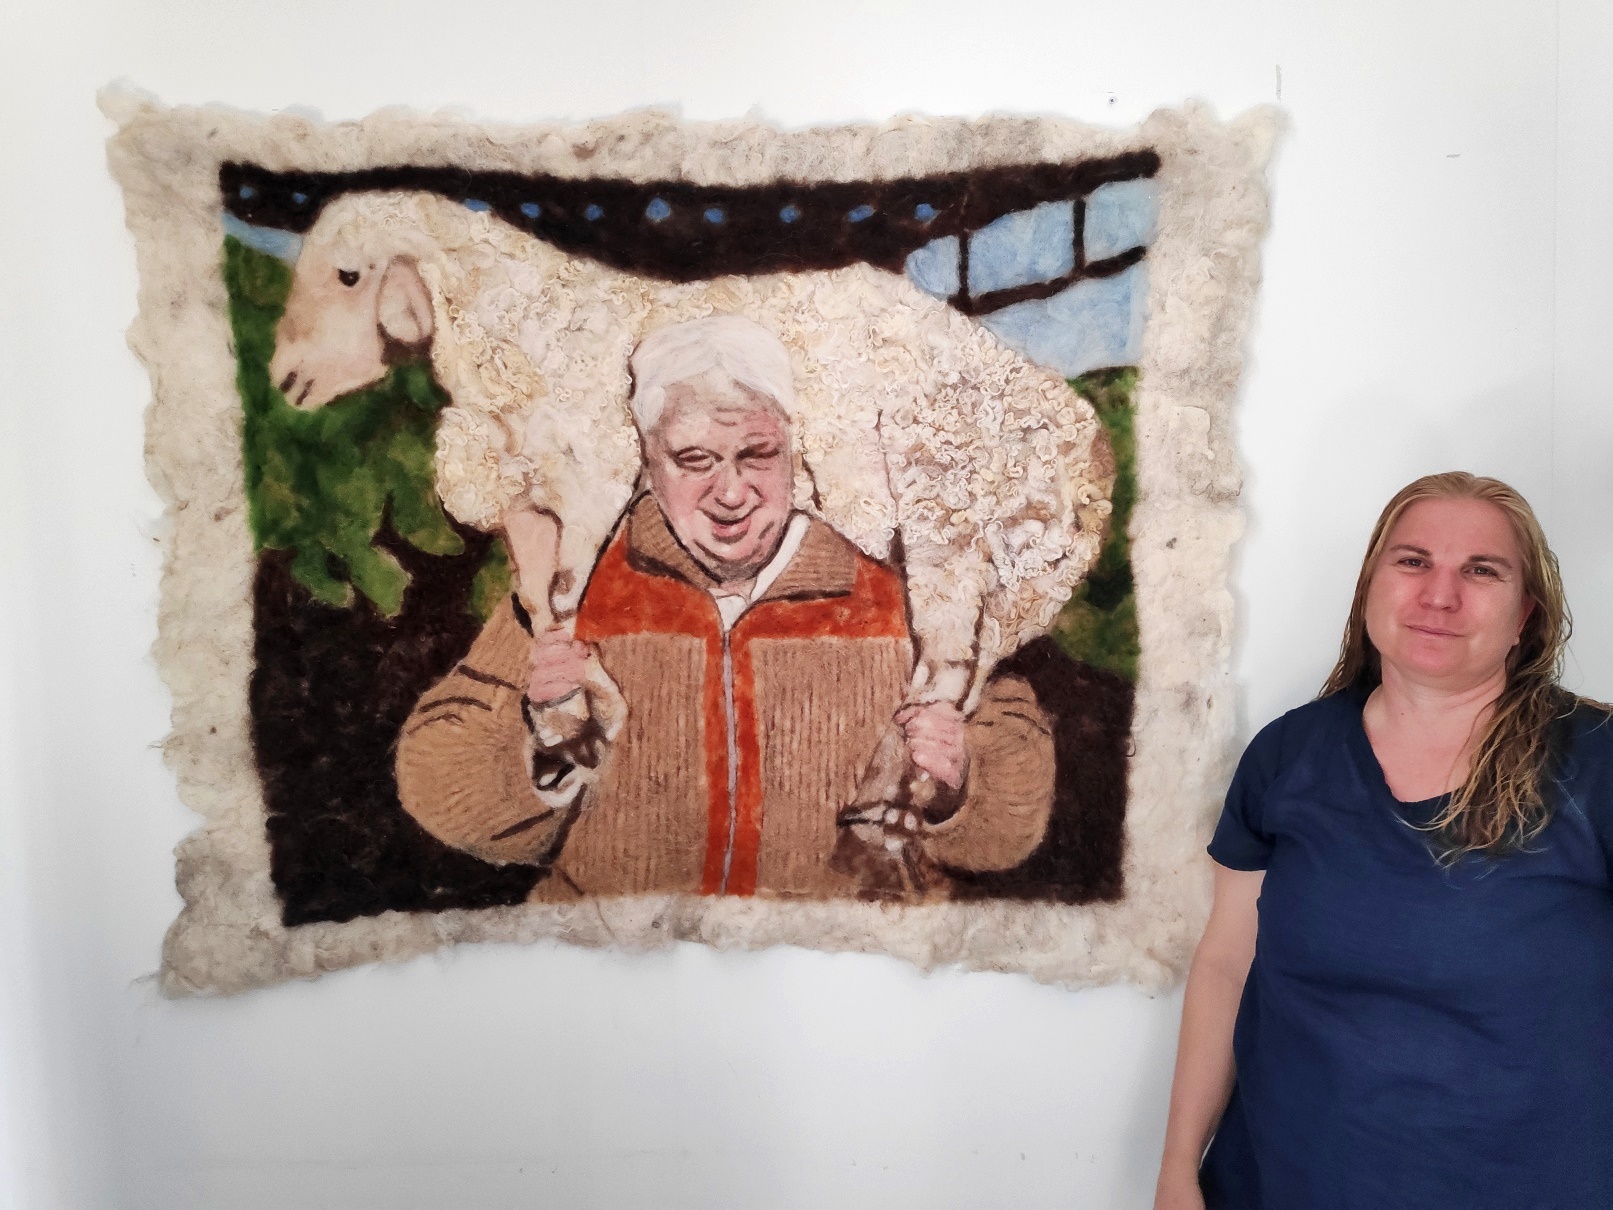 לפני הבחירות ולציון יום הולדתו ה-92 של אריאל (אריק) שרון ז"ל  האמנית דליה מטמון מהערבה התיכונה מציגה לזכרו  "כוח ורכות" – יצירה עשויה צמר כבשים טבעי